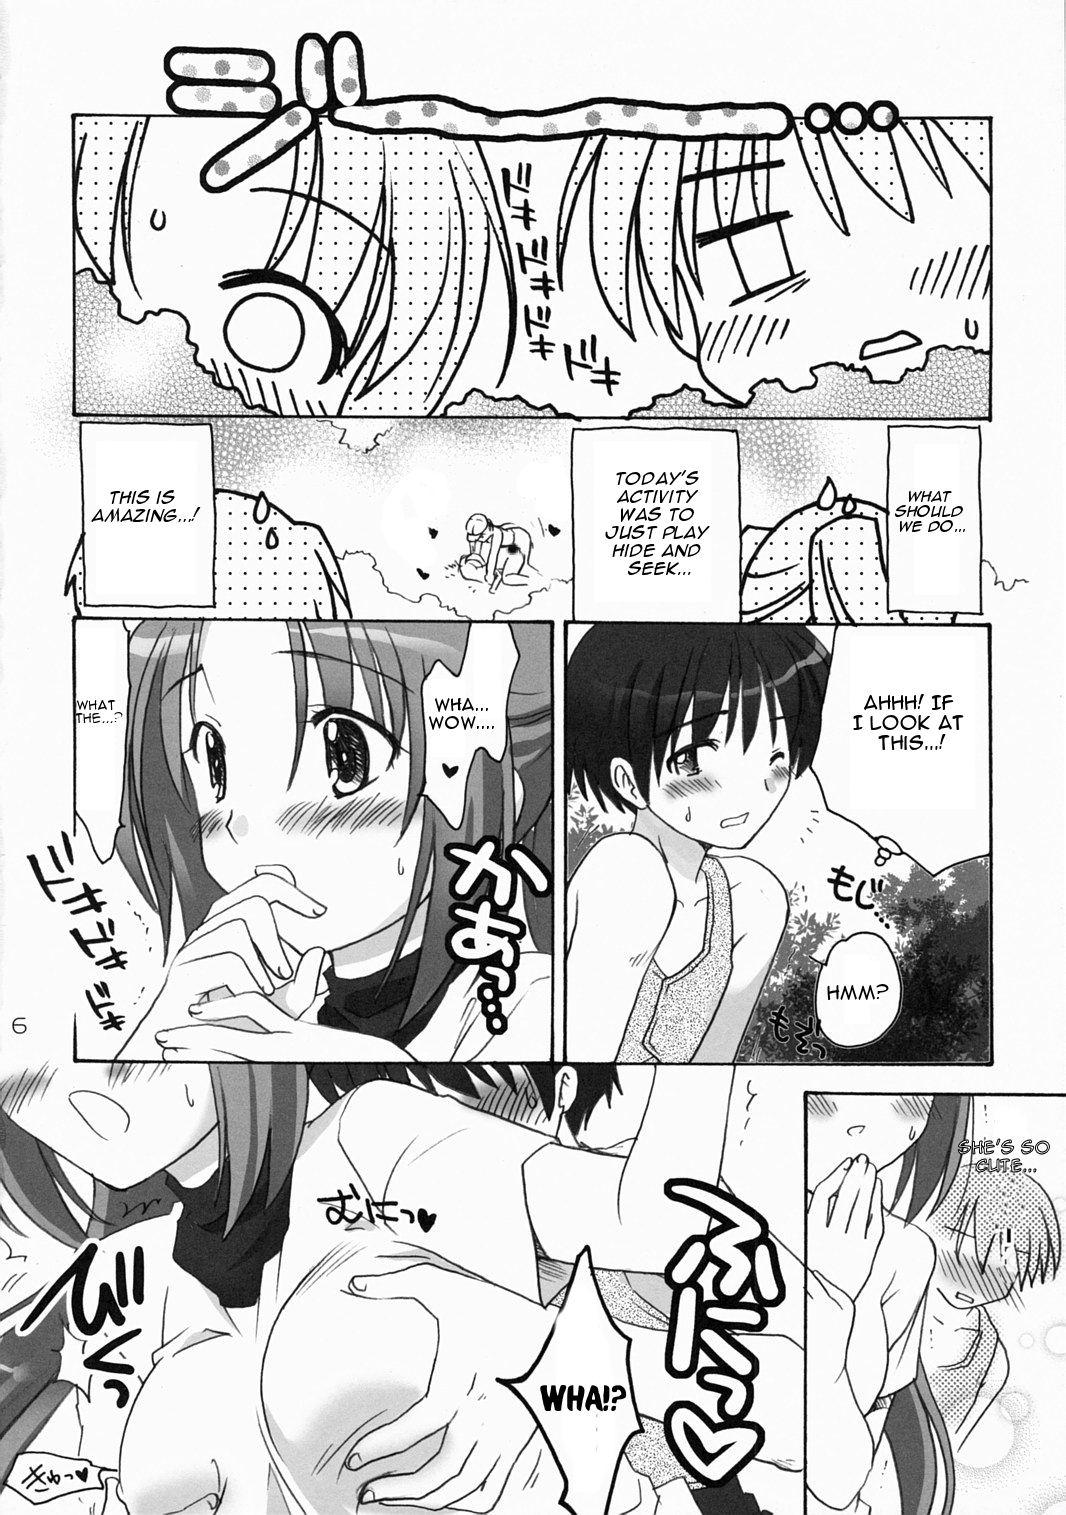 Sex Tape Higurashi Urabon 2 - Higurashi no naku koro ni Sex Toys - Page 5